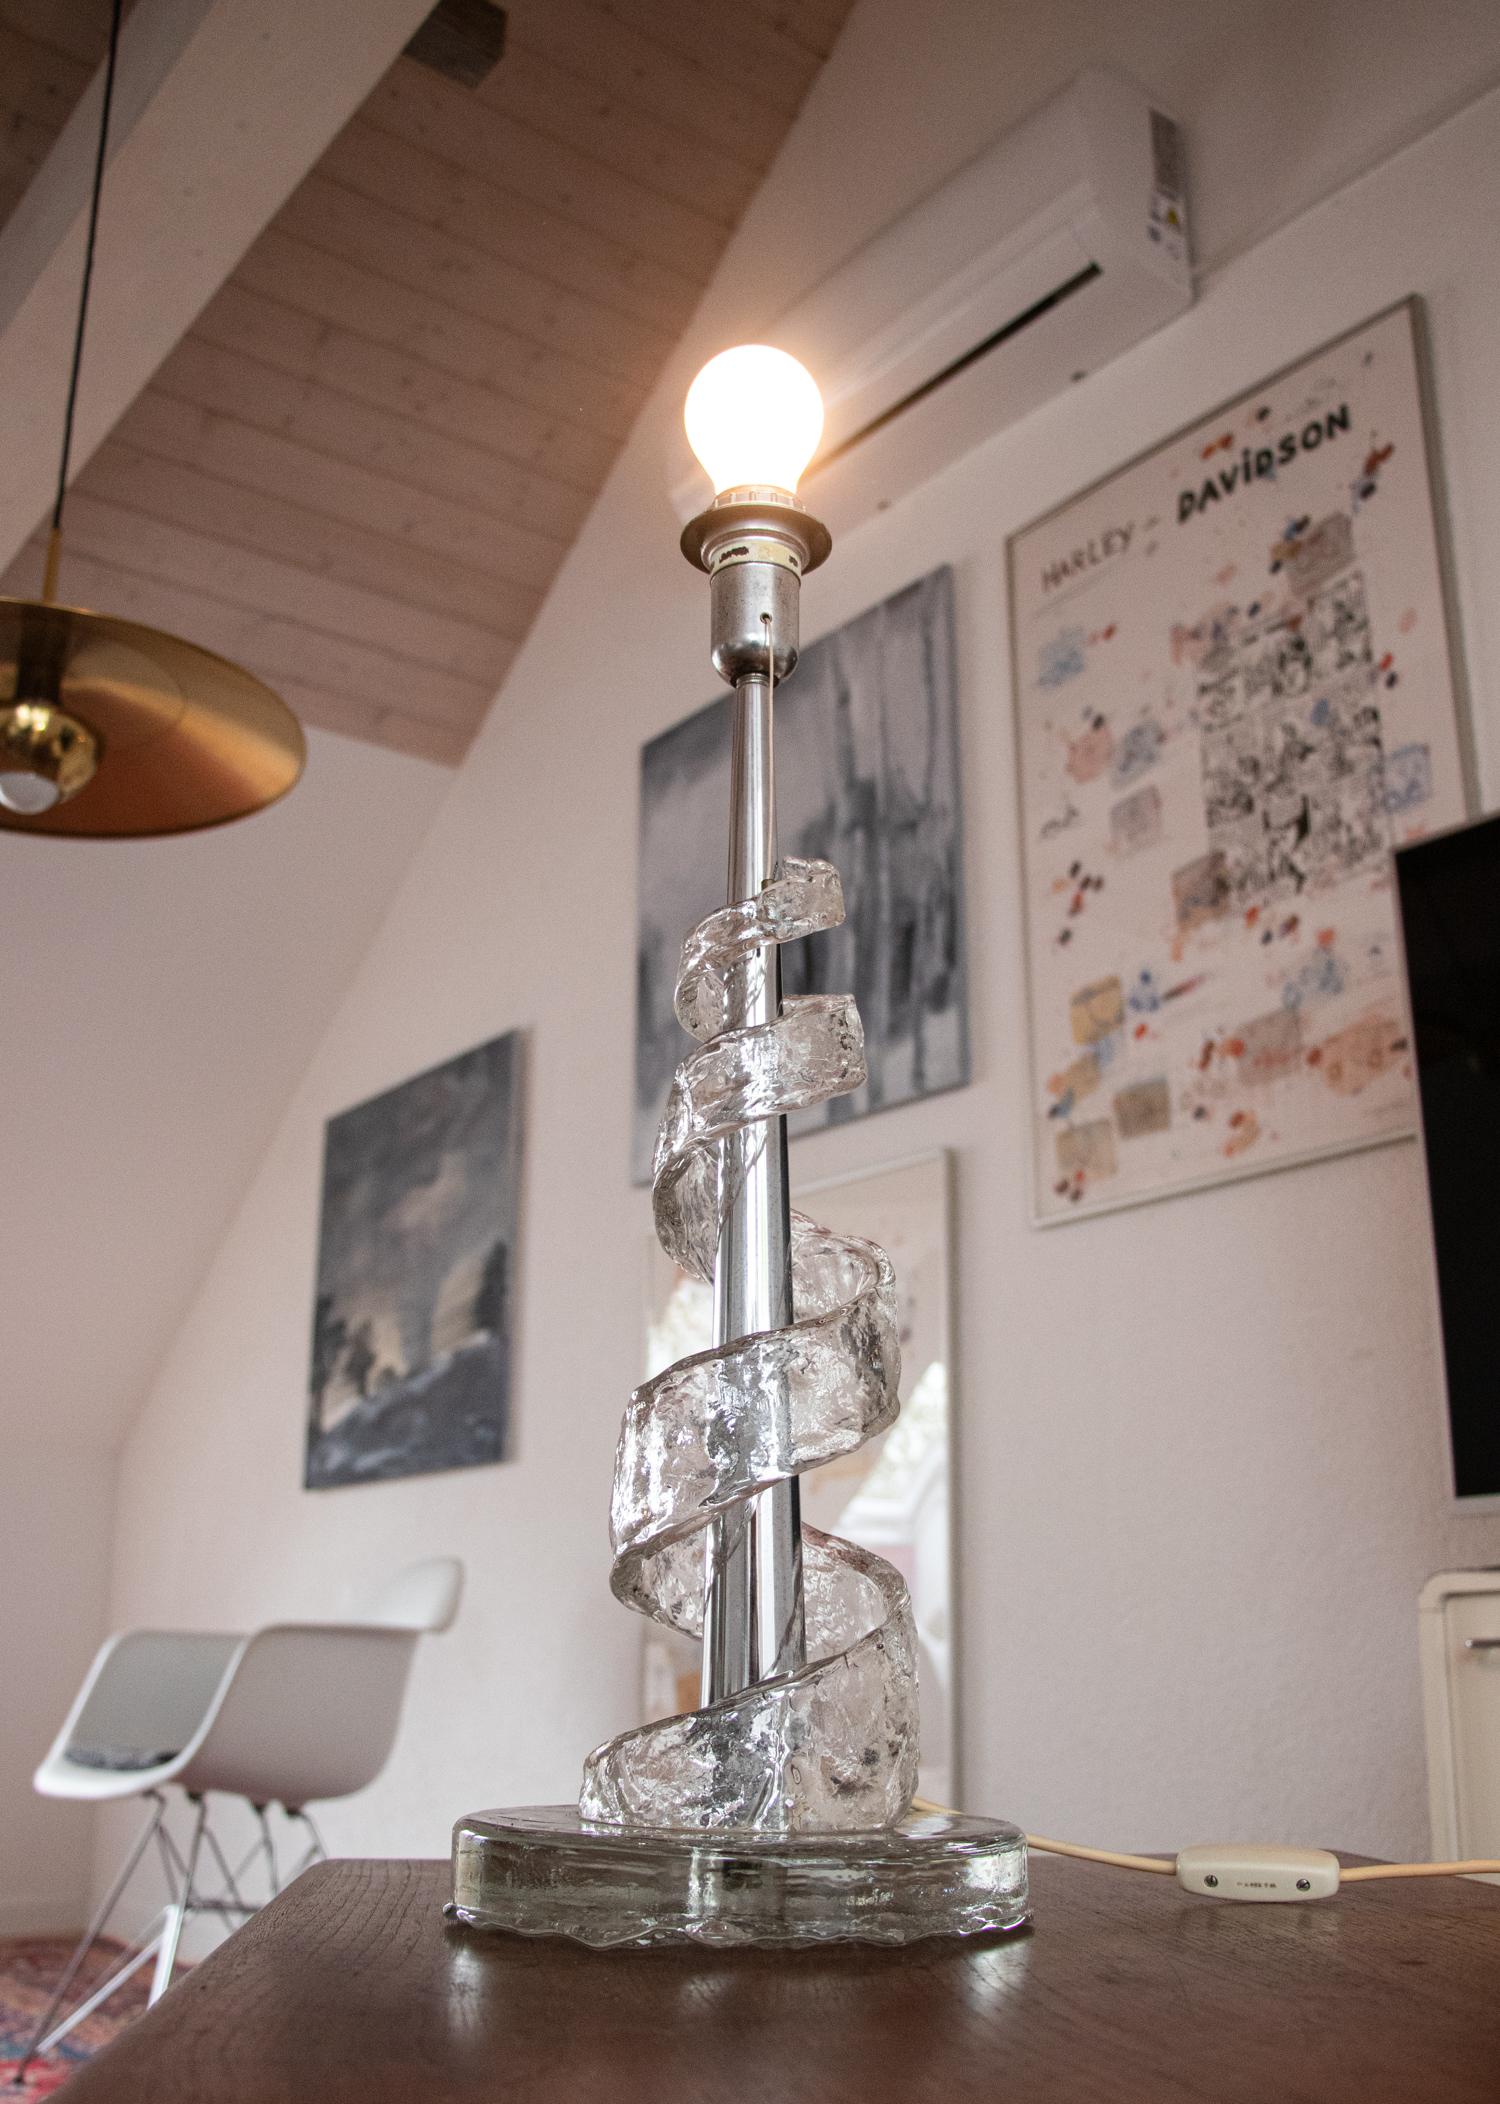 Erstaunliche große Tischlampe aus einer Spirale aus Muranoglas, die sich um einen Chromstab windet.

Schmuckstück aus der Zeit. Auch im unbeleuchteten Zustand ein echter Blickfang. 

Diese Leuchtskulptur ist ein Entwurf von Angelo Brotto für